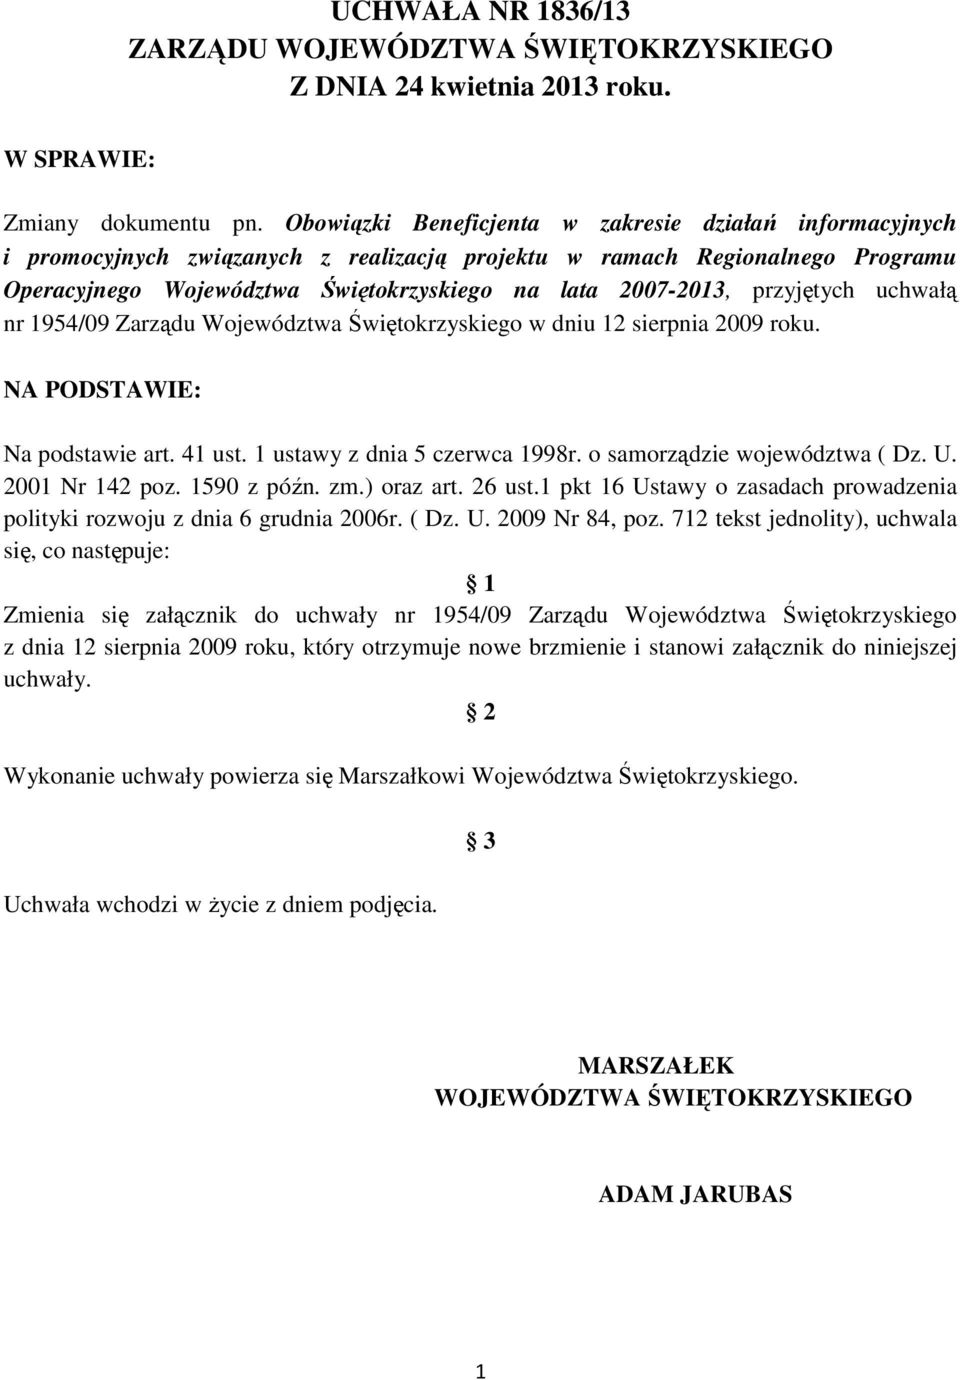 przyjętych uchwałą nr 1954/09 Zarządu Województwa Świętokrzyskiego w dniu 12 sierpnia 2009 roku. NA PODSTAWIE: Na podstawie art. 41 ust. 1 ustawy z dnia 5 czerwca 1998r.